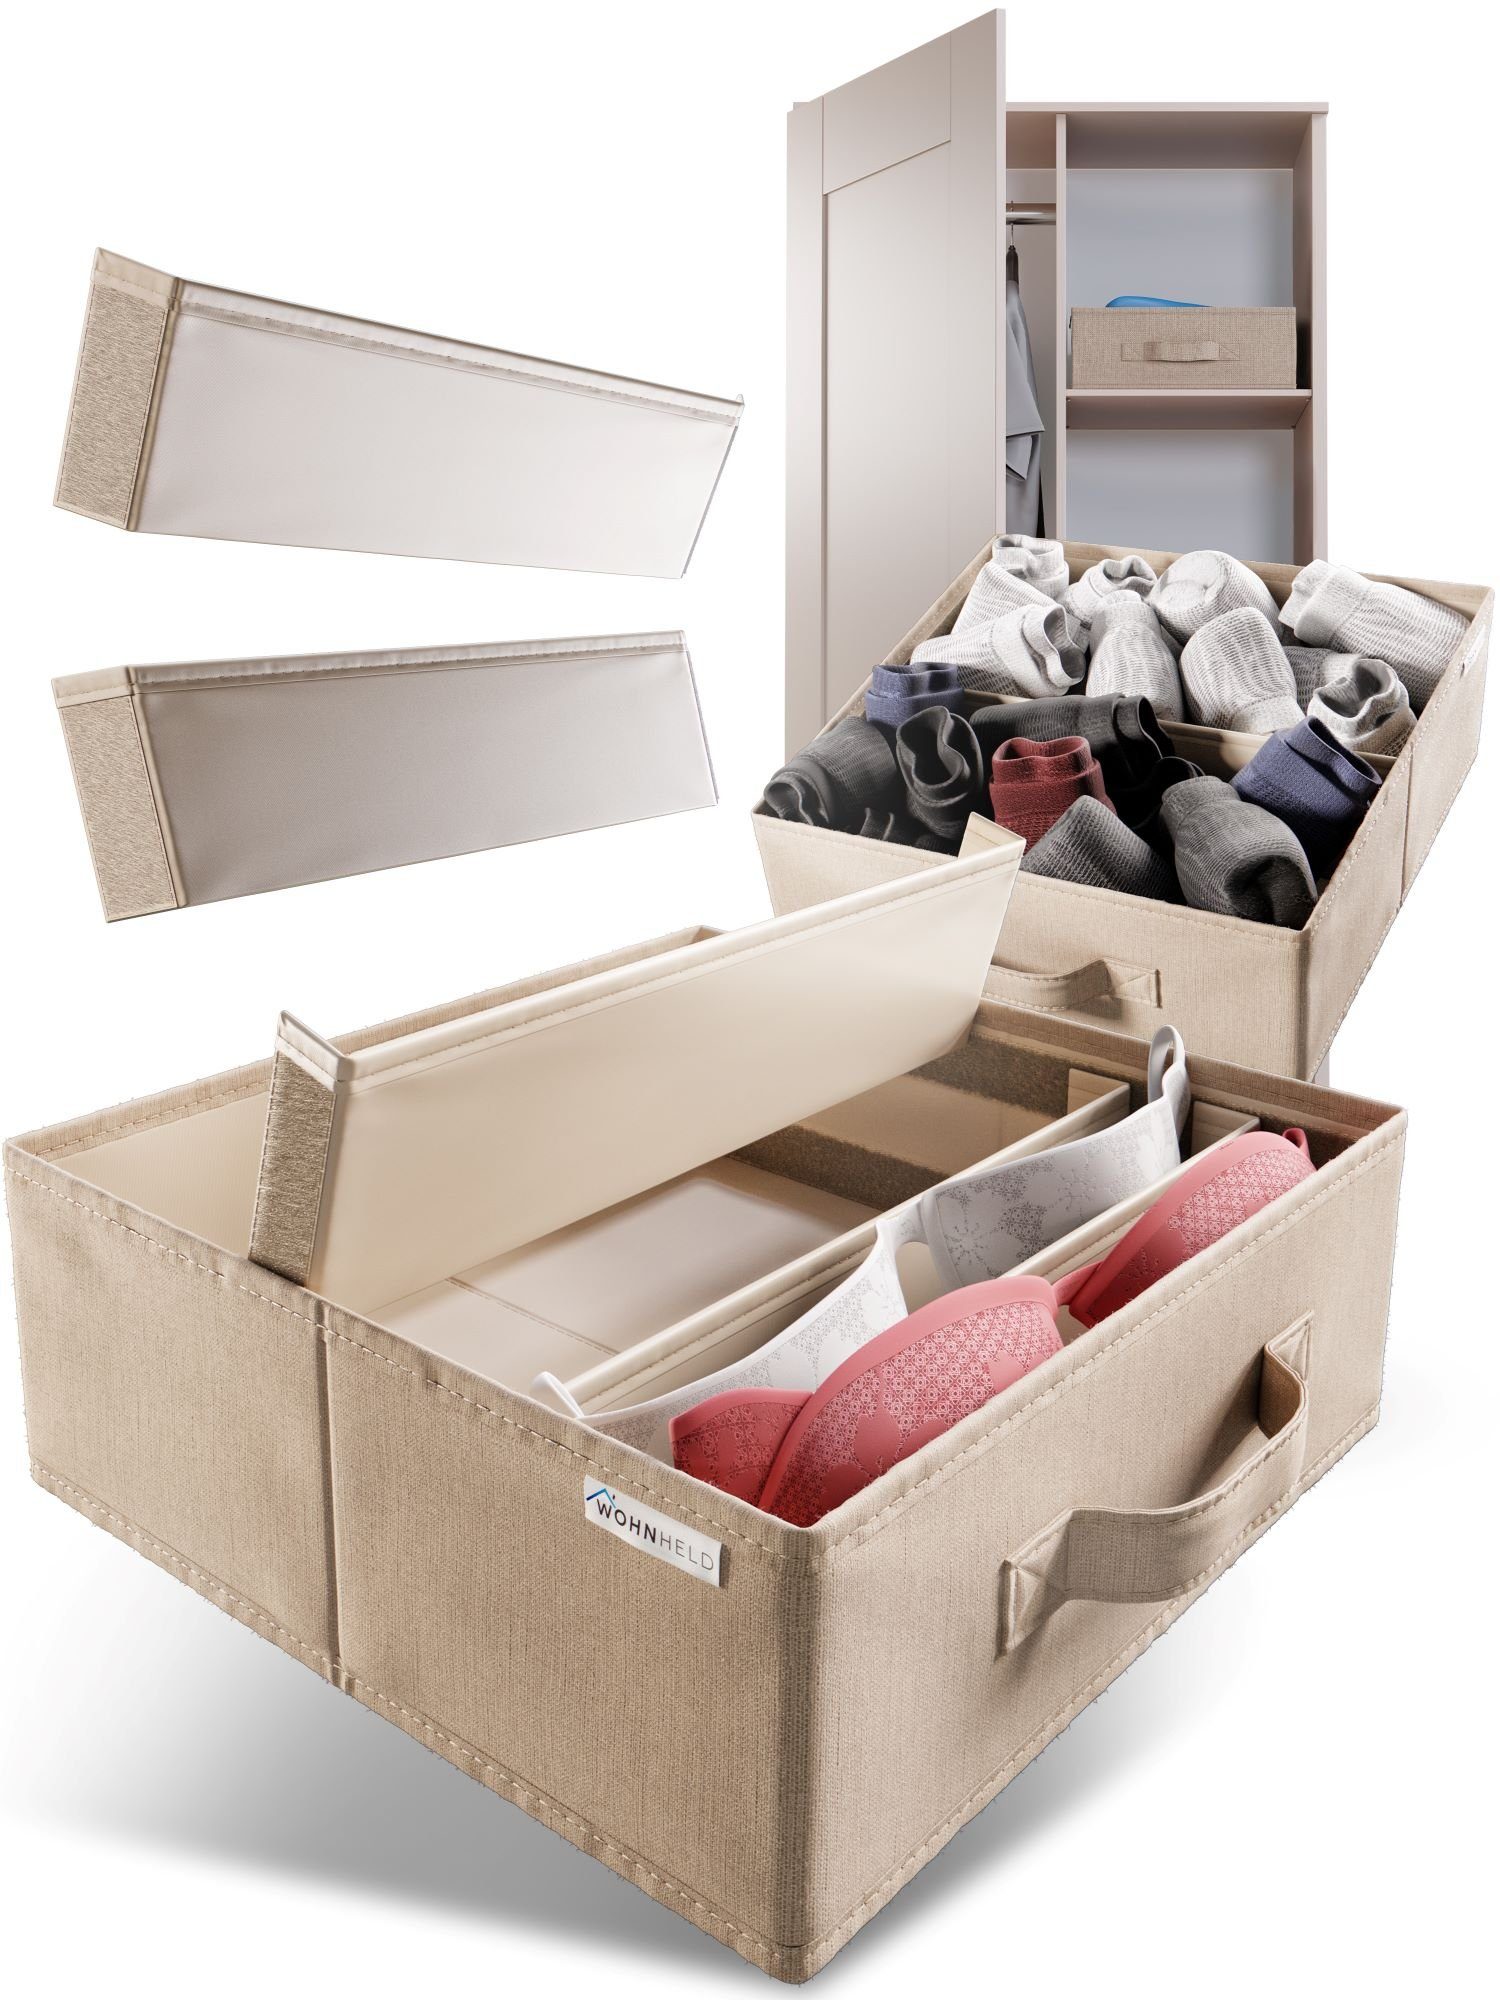 Wohnheld Organizer Aufbewahrungsboxen für Wäsche Schubladen Schrank Organizer 2er Set